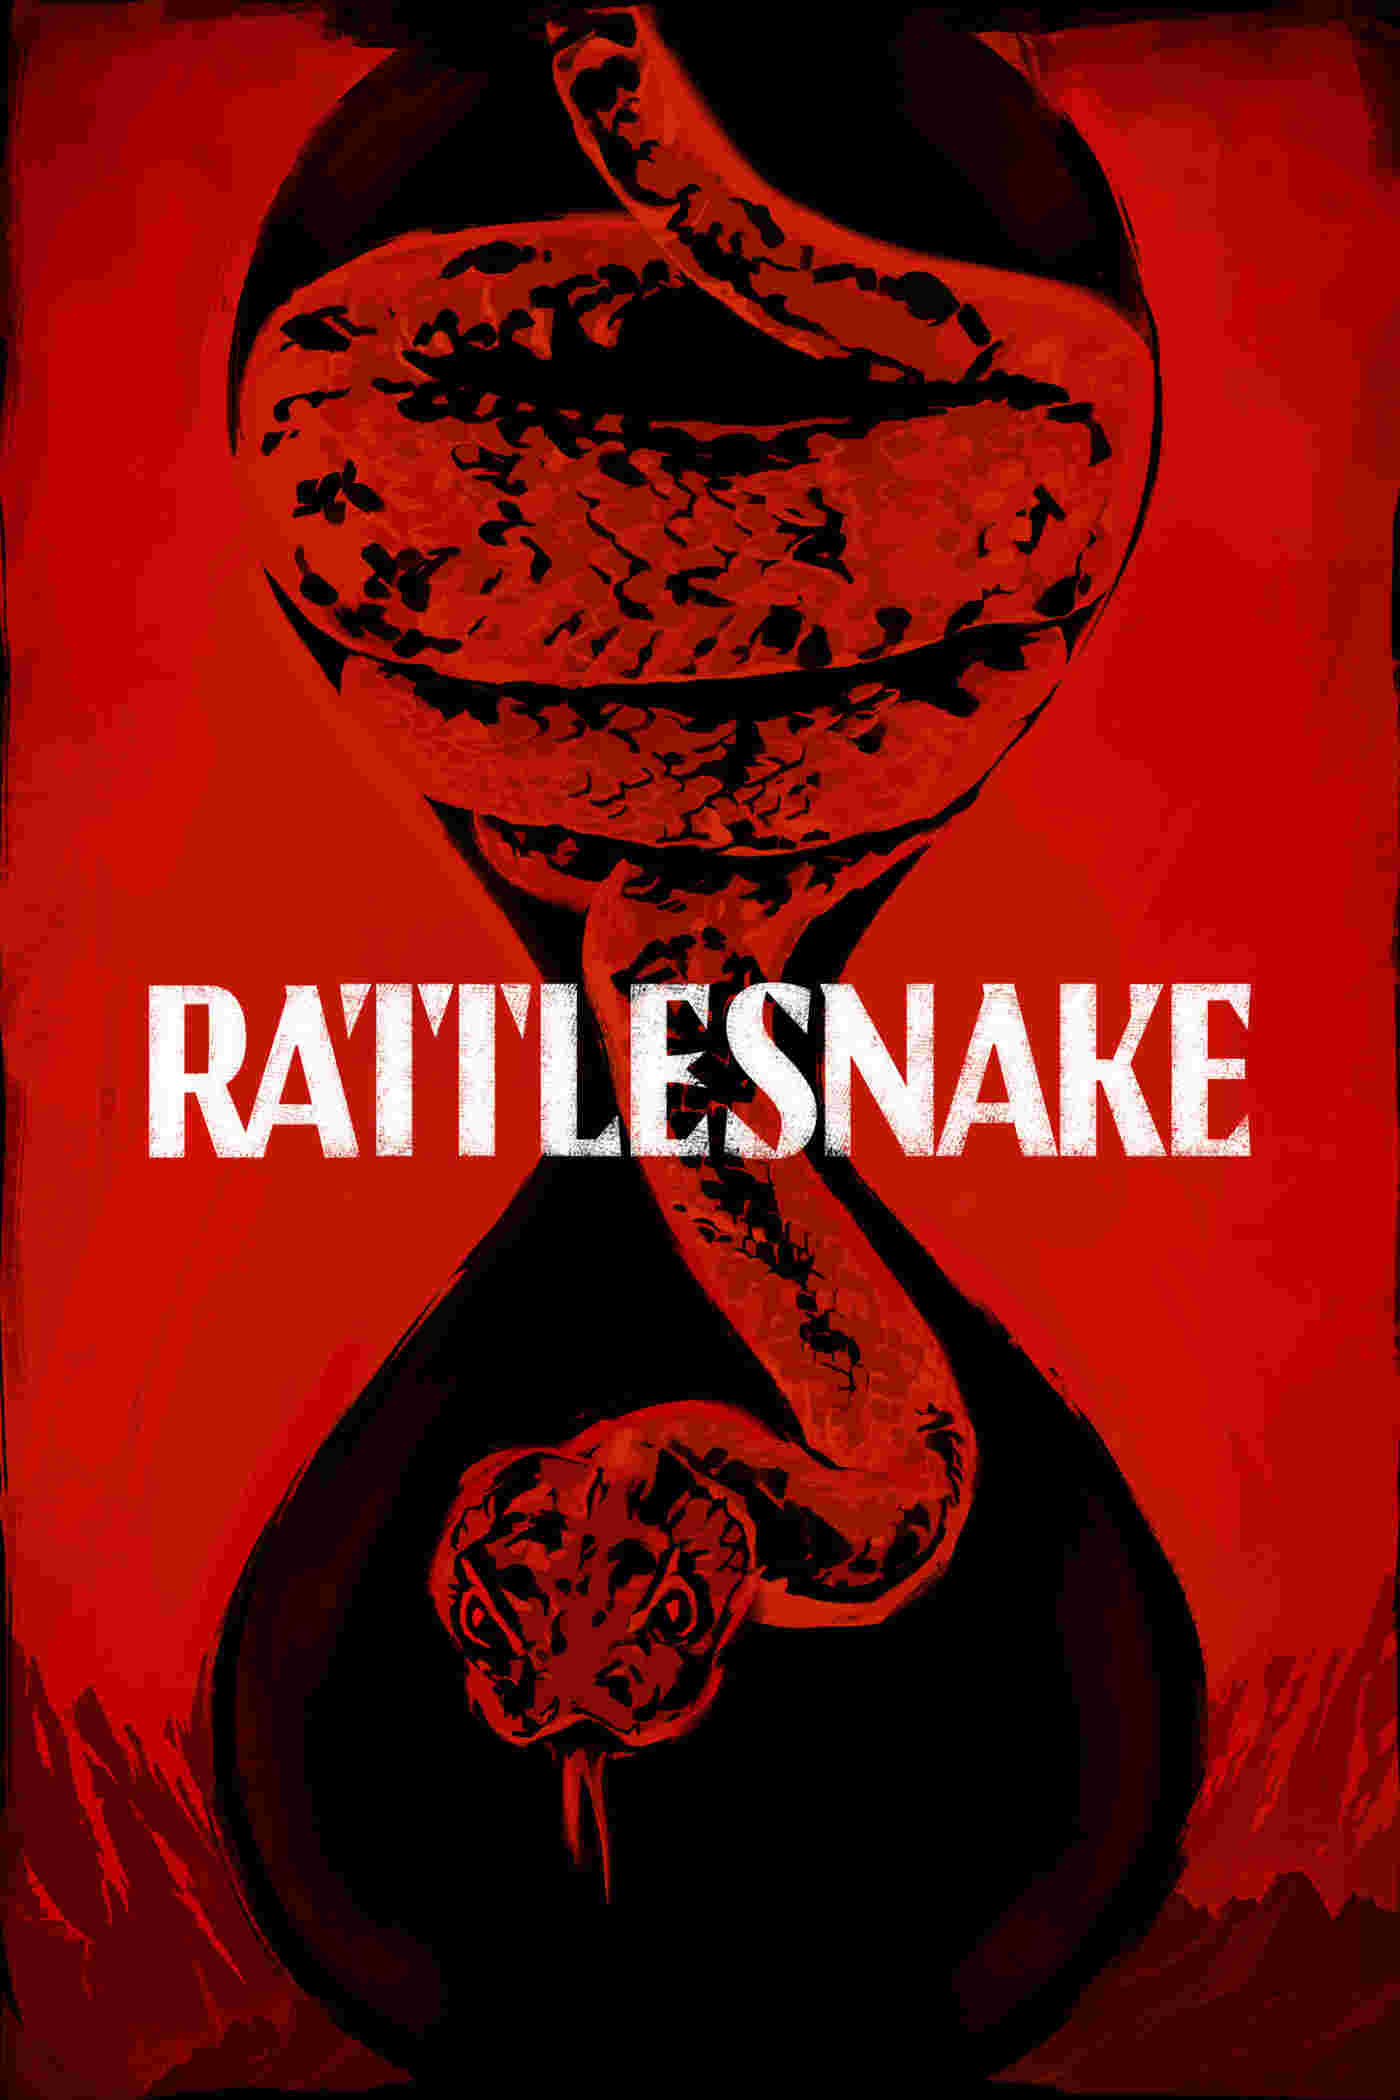 Rattlesnake (2019) Carmen Ejogo